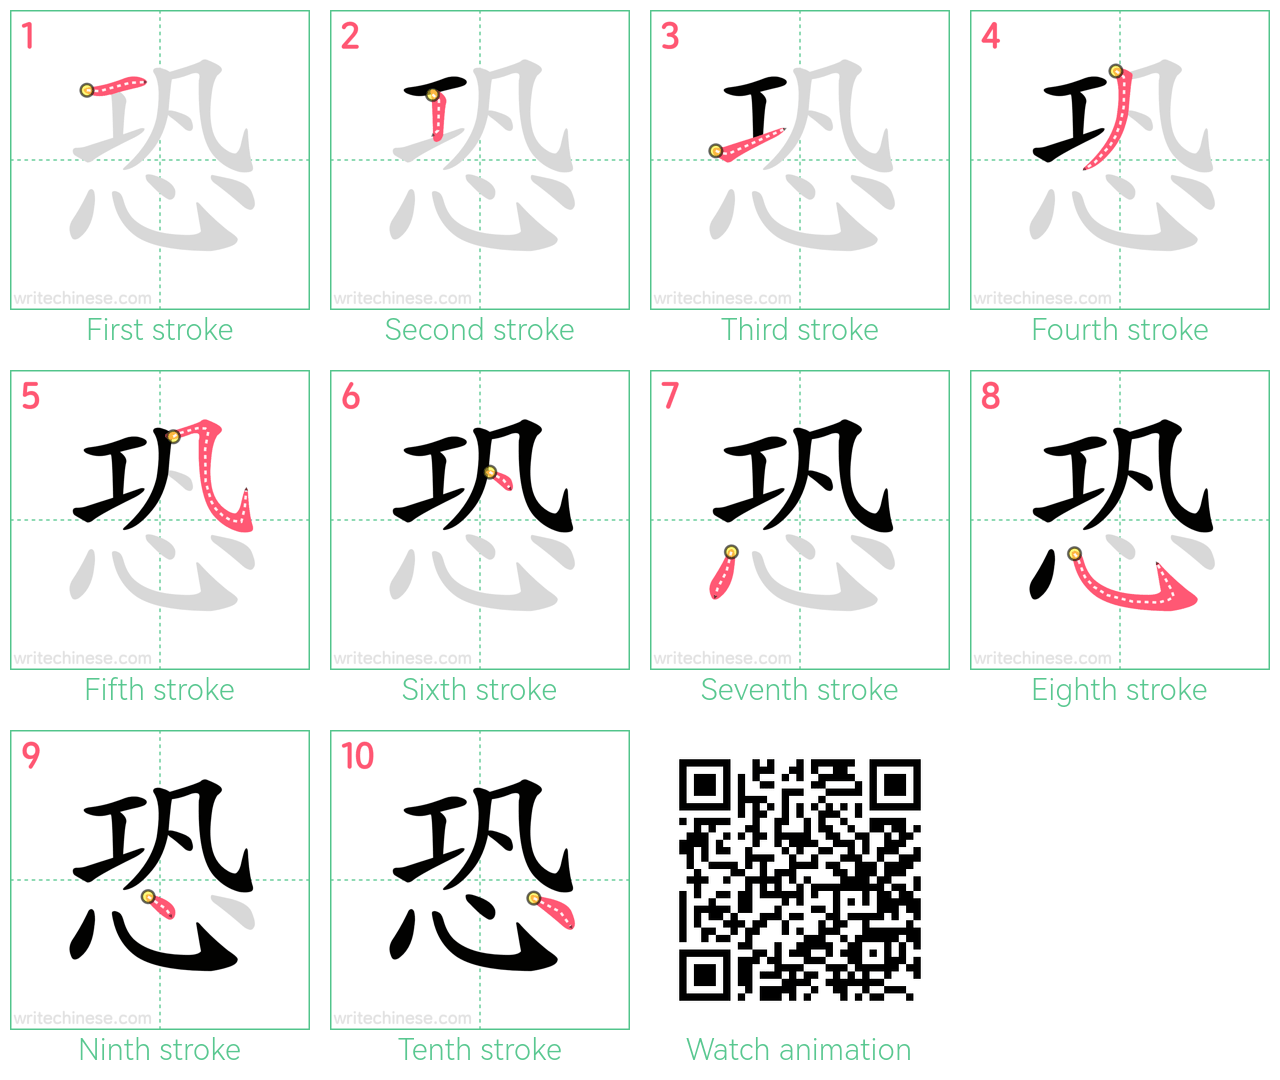 恐 step-by-step stroke order diagrams